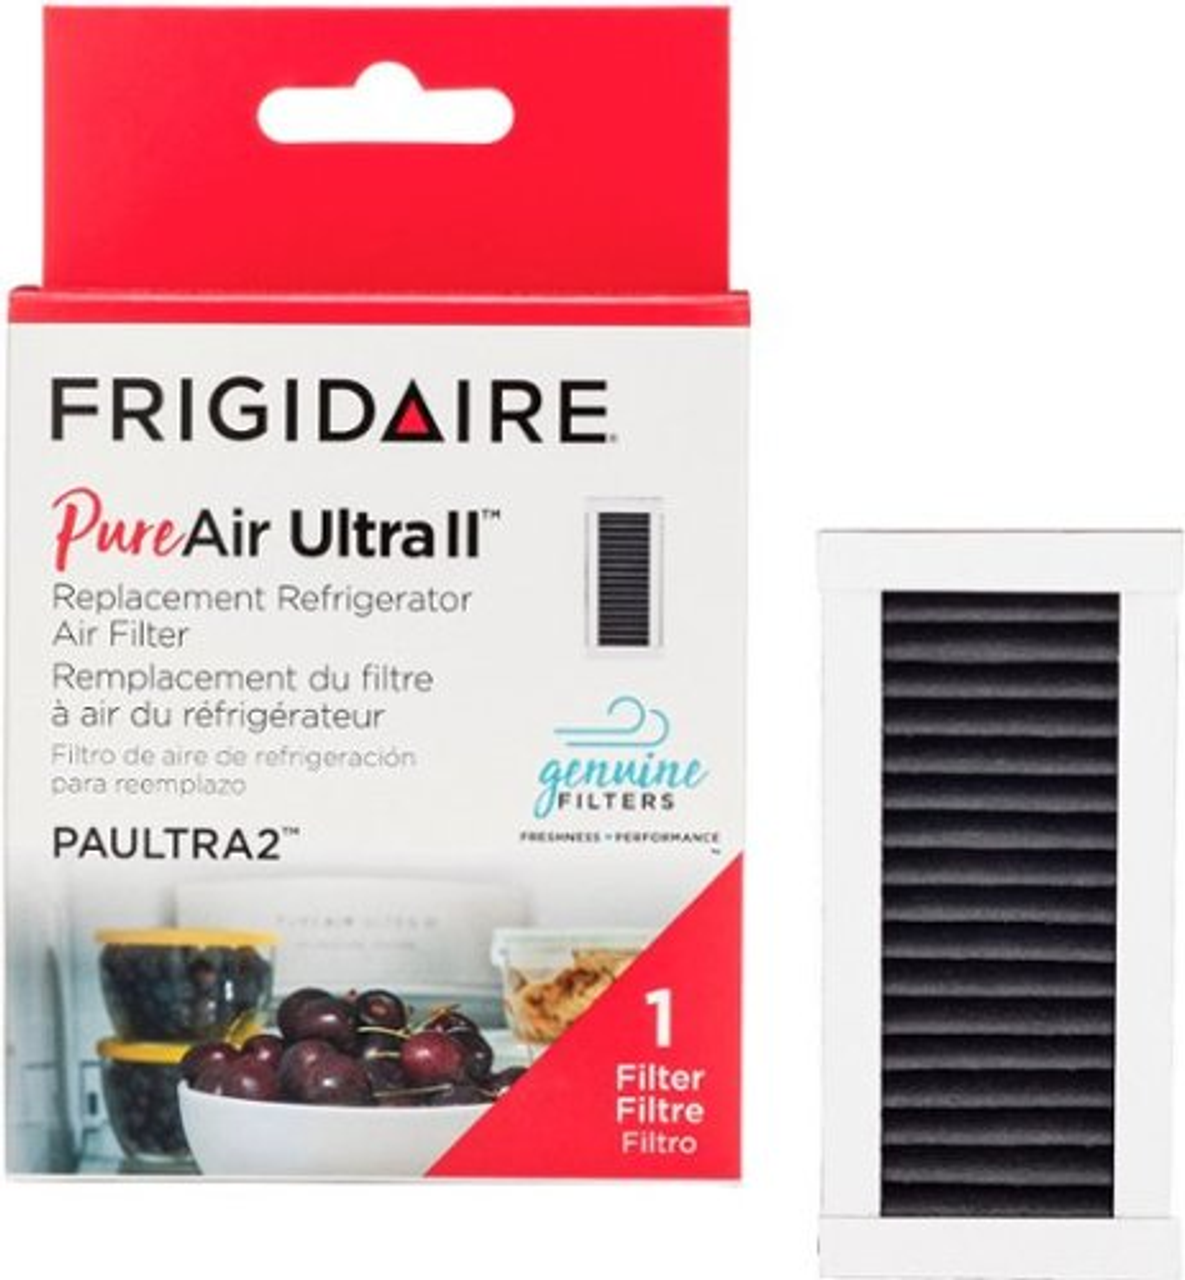 Frigidaire PureAir Ultra II Air Filter